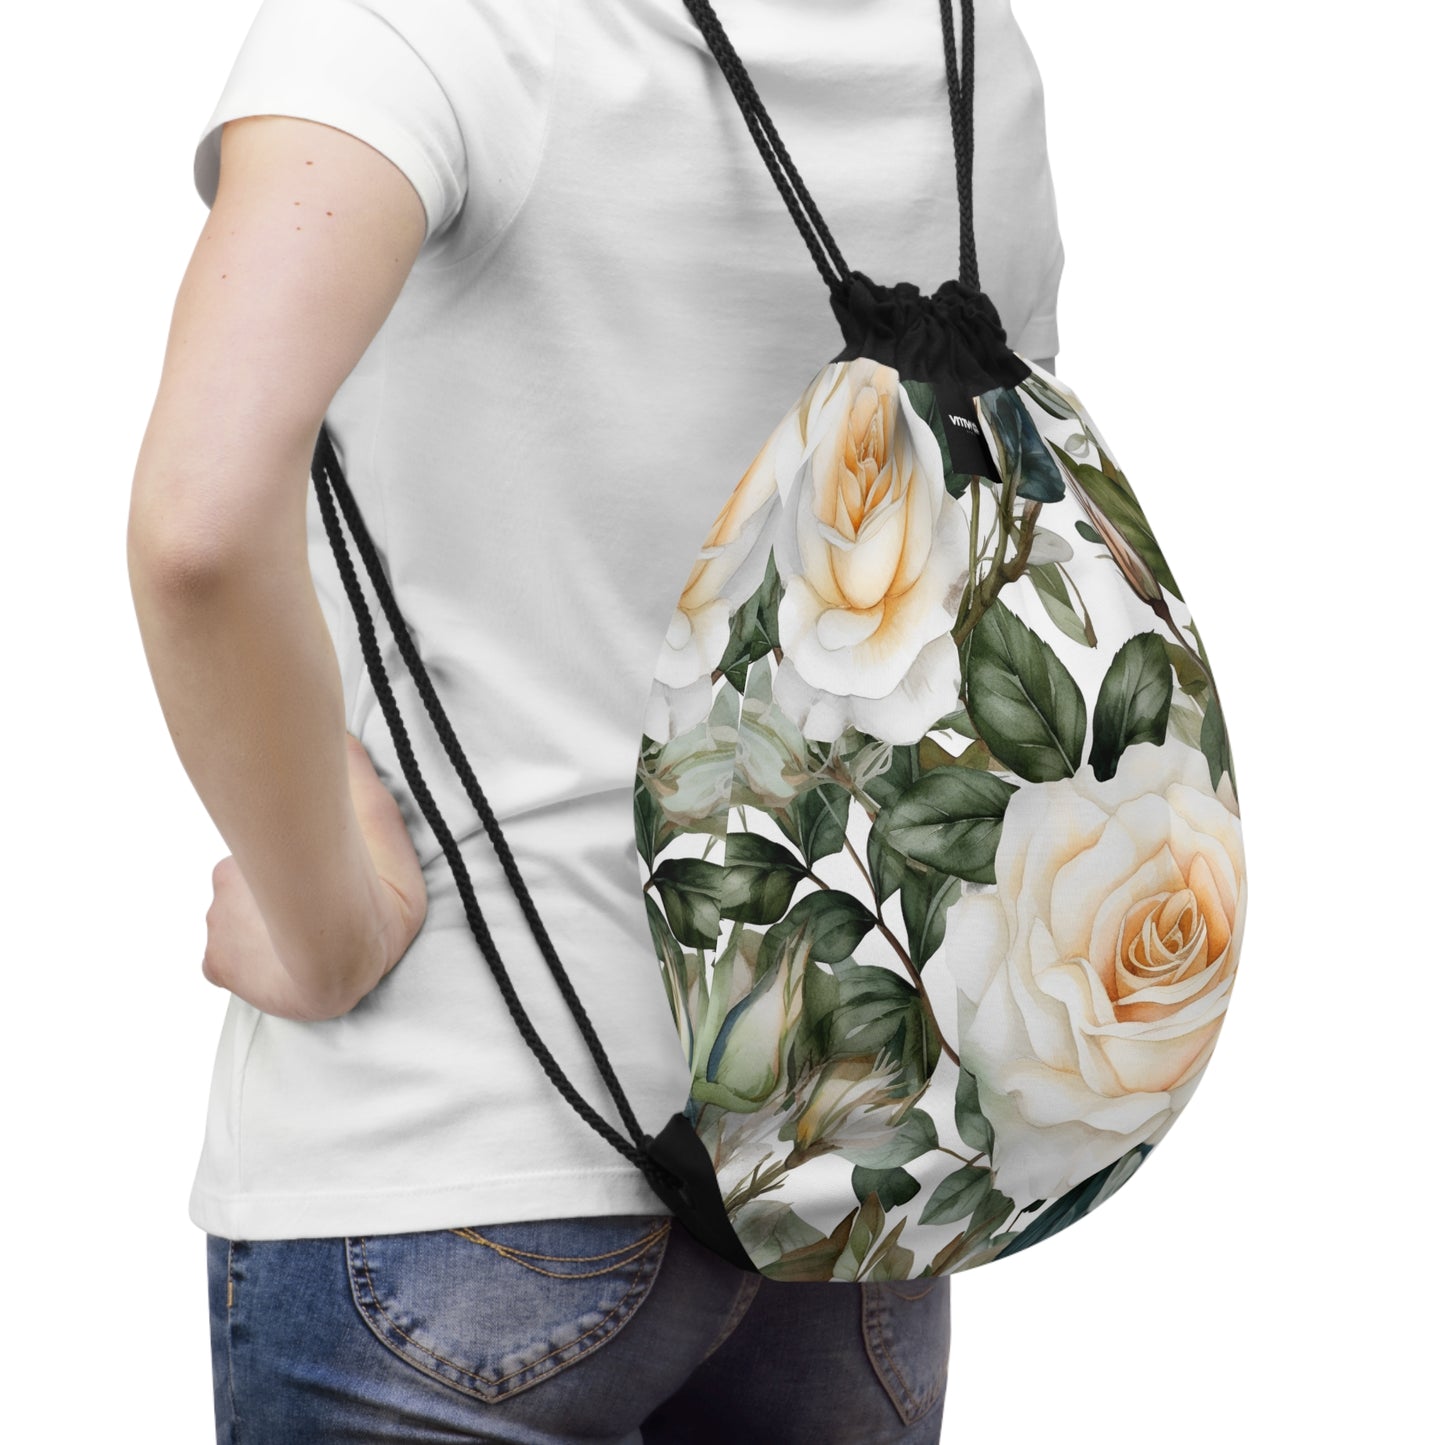 White Rose Floral Drawstring Bag